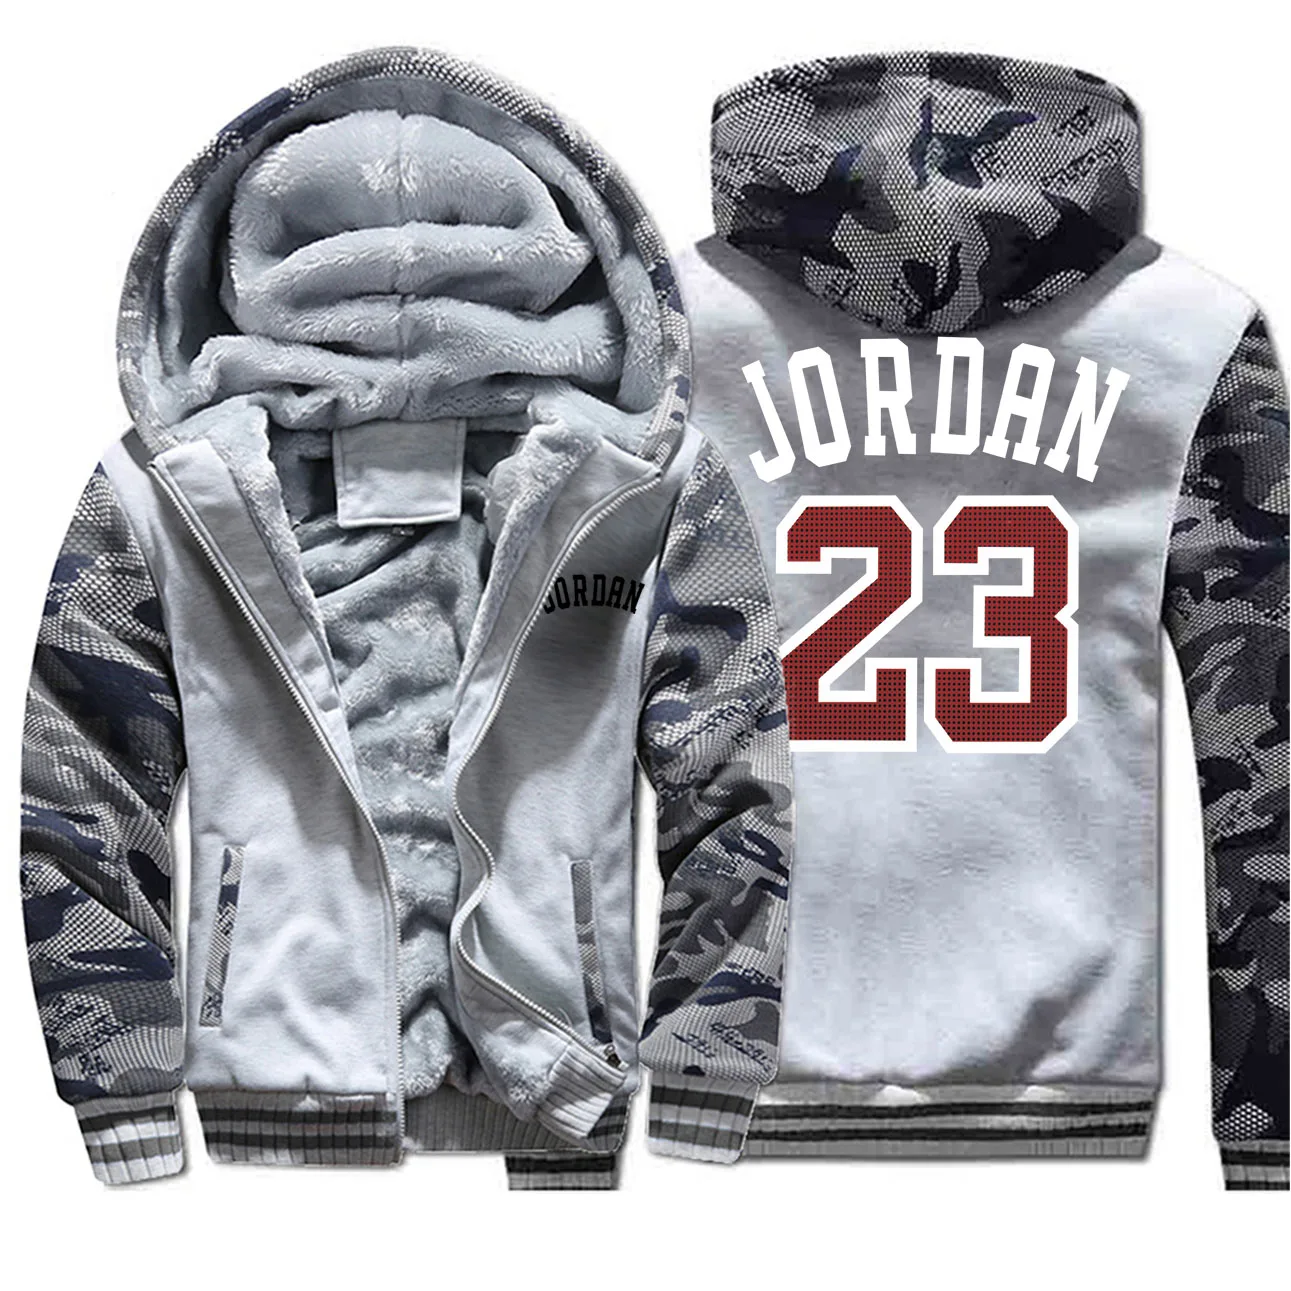 Jordan 23 мужские толстовки с буквенным принтом зимние утепленные мужские куртки камуфляжные пальто с рукавами стильная популярная верхняя мужская спортивная одежда - Цвет: Light Gray 6